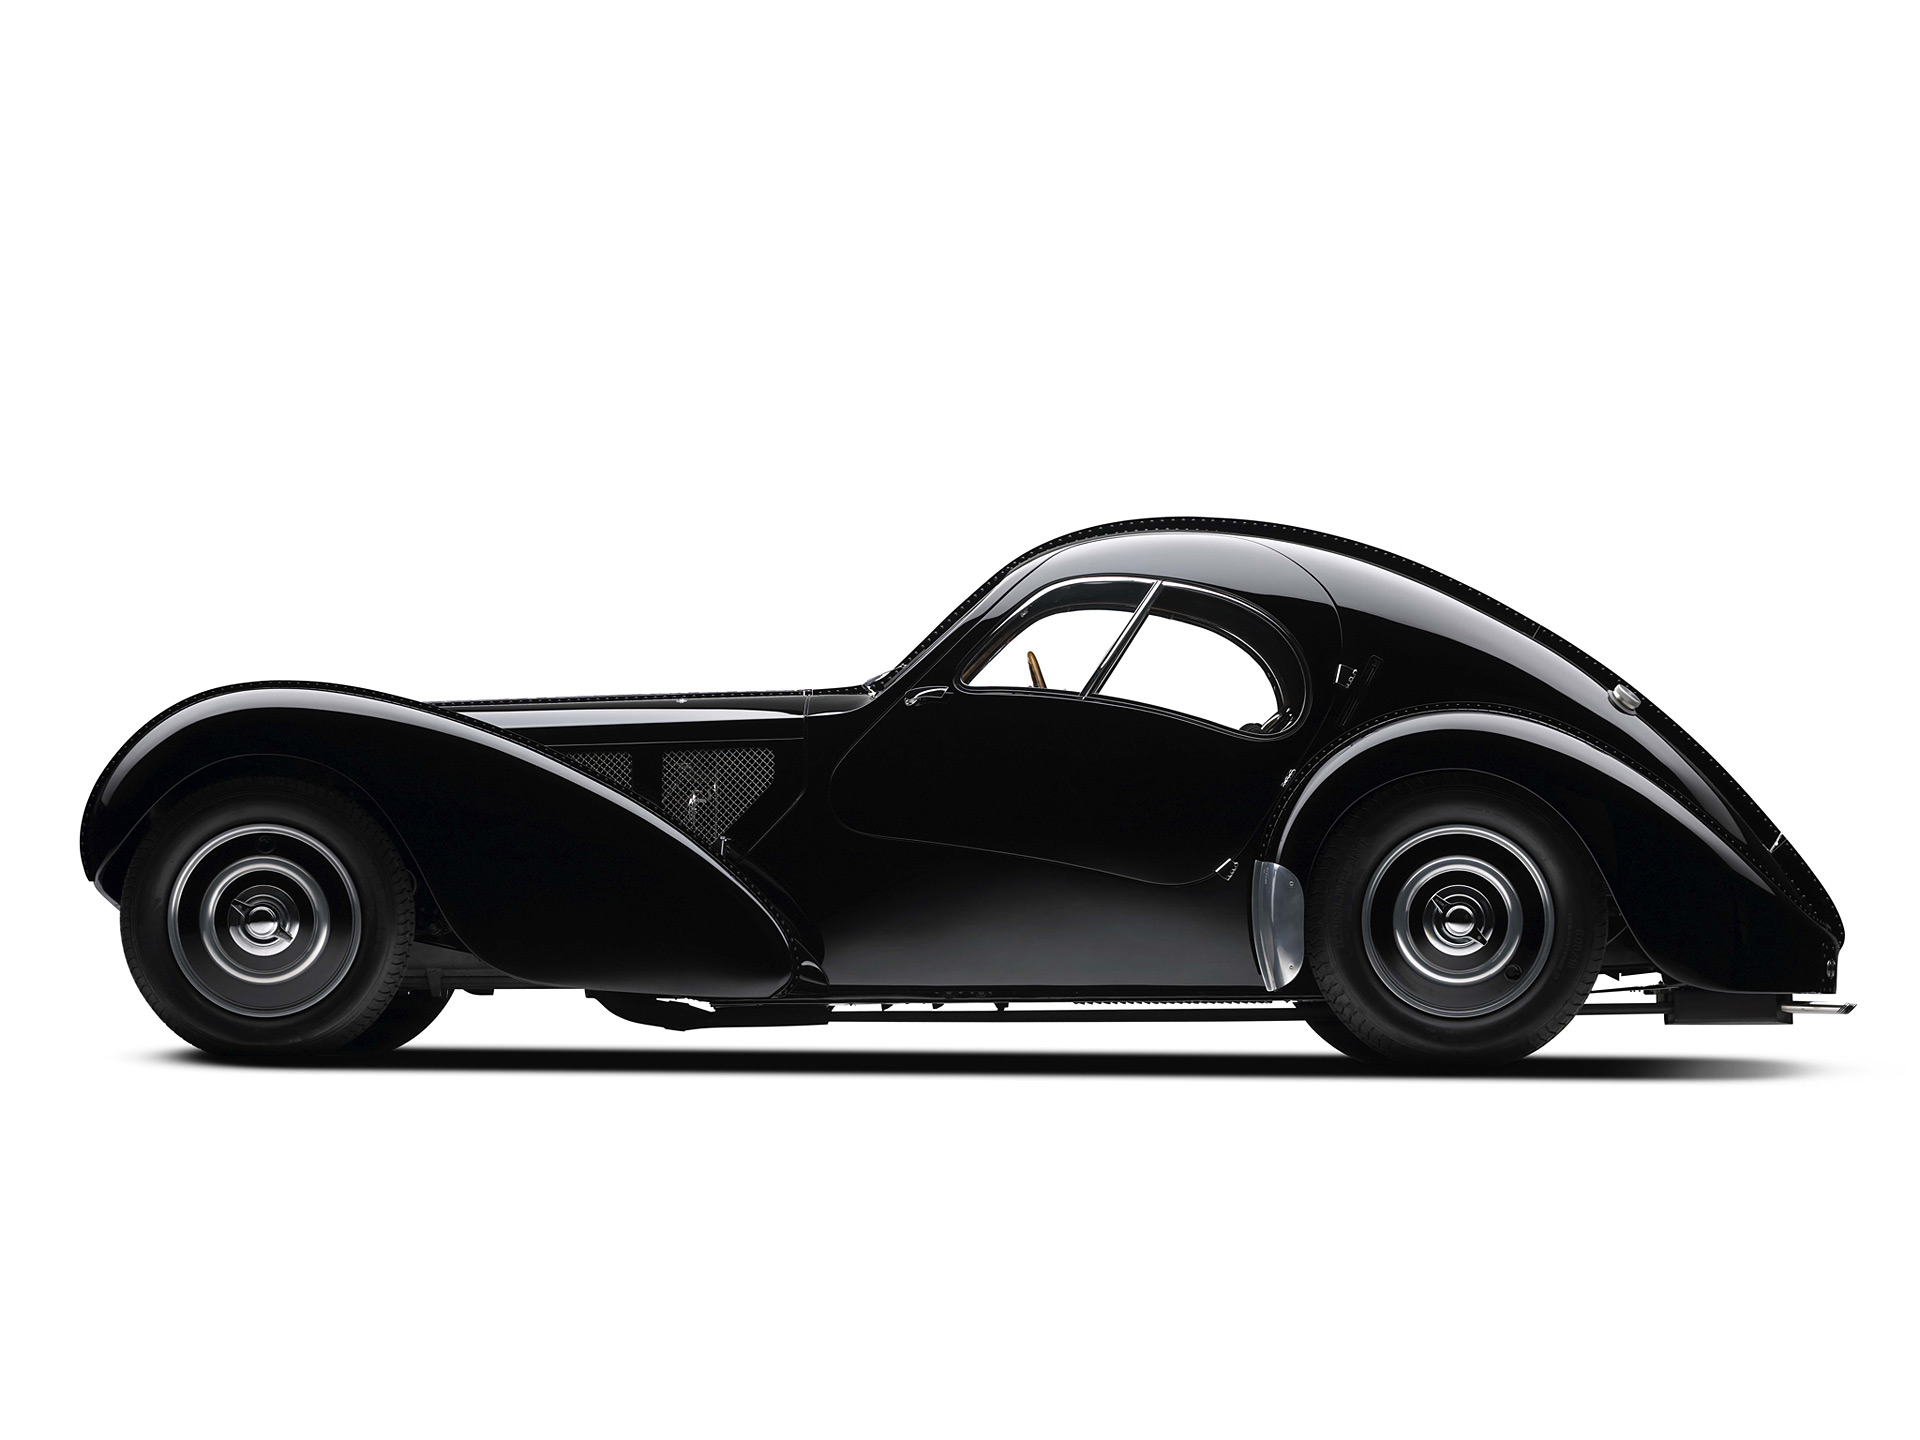 Скачать обои Bugatti Type 57Sc Атлантический Купе на телефон бесплатно